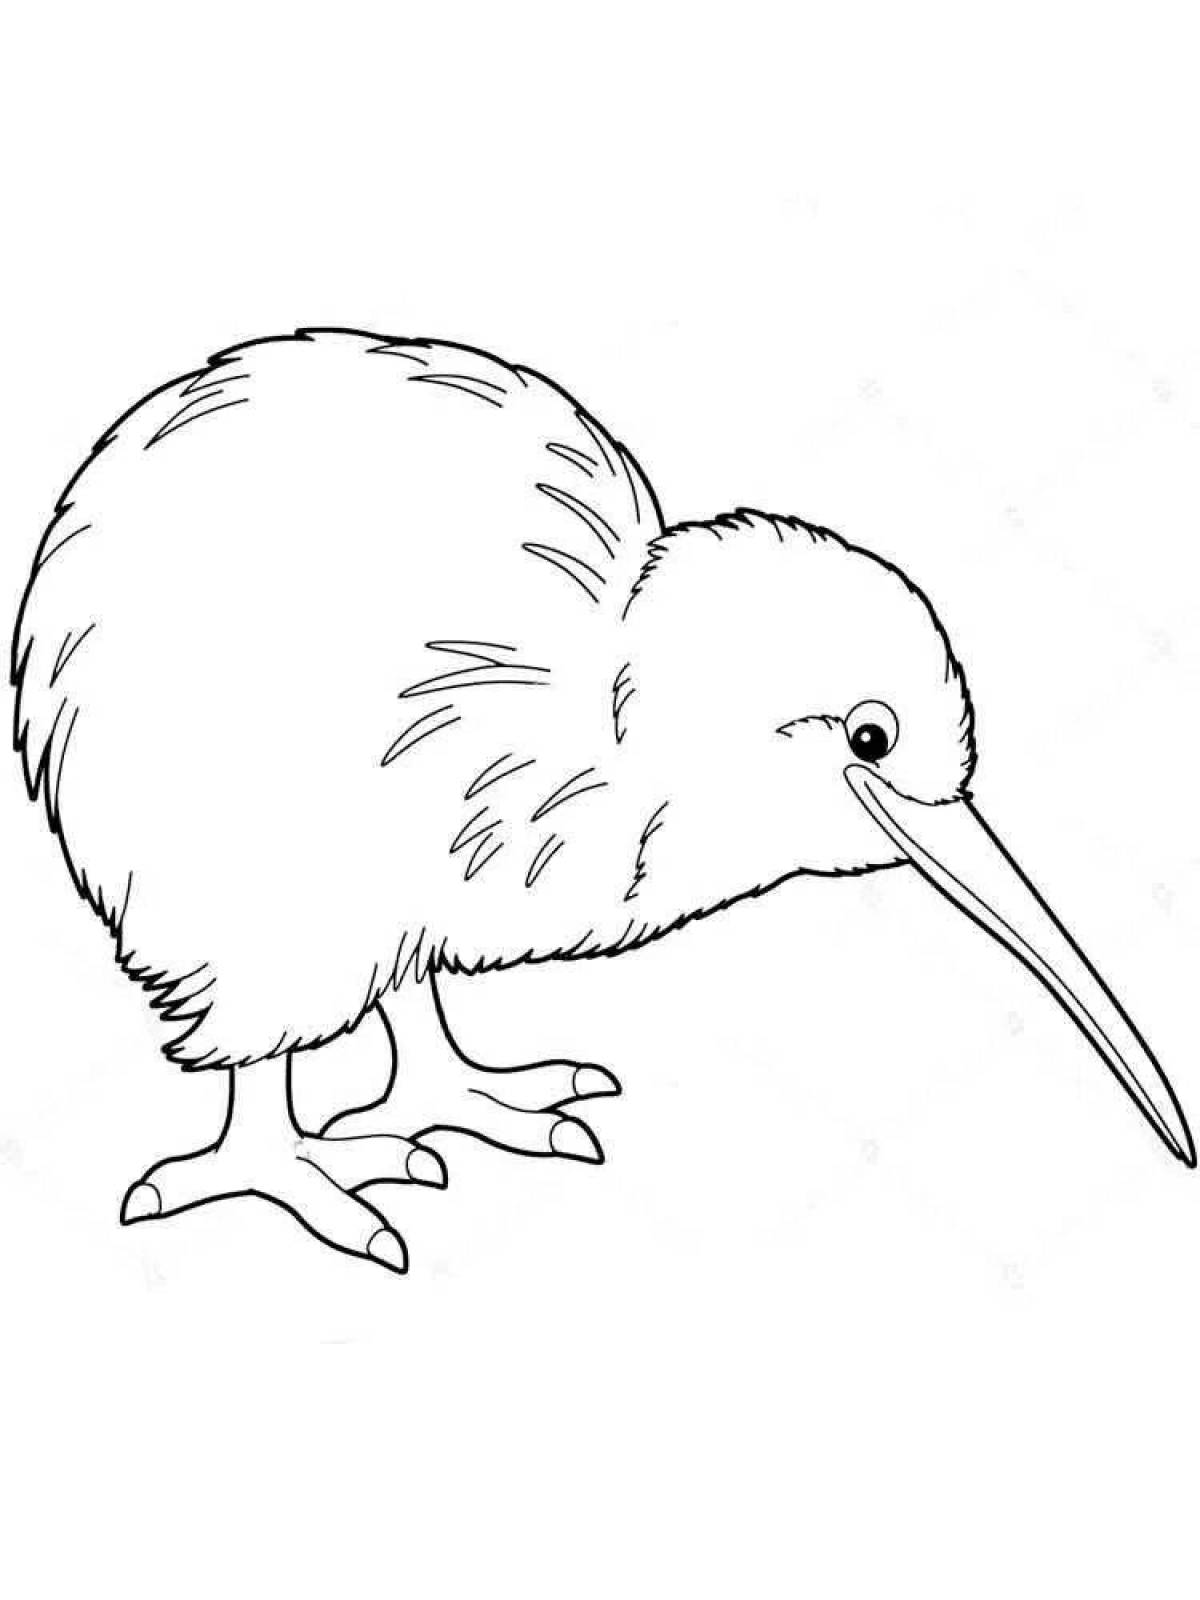 Attractive kiwi bird coloring page